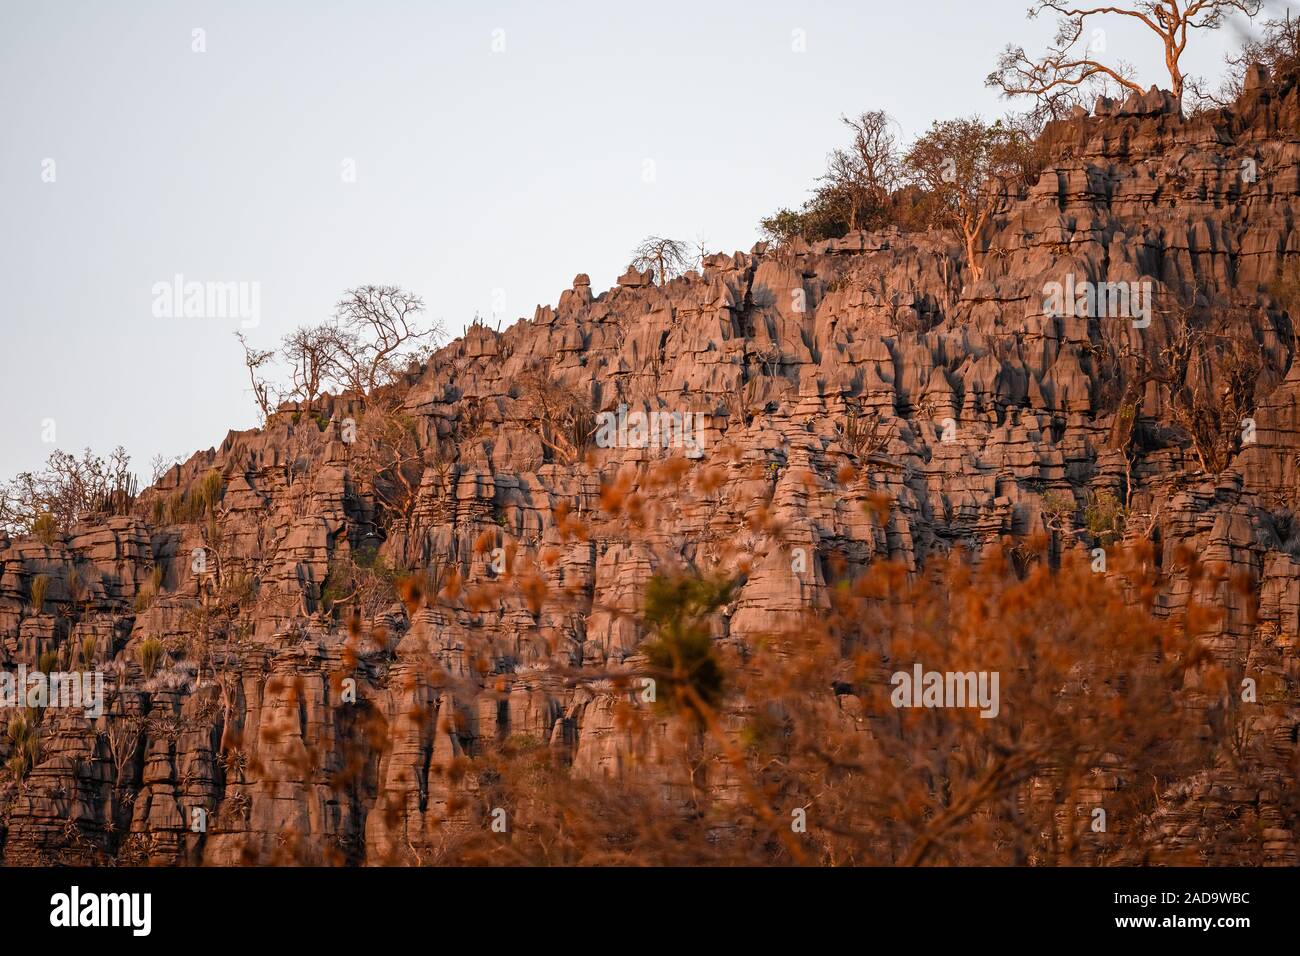 Limestone formation at the Parque Nacional Cavernas do Peruacu. Minas Gerais, Brazil, South America. Stock Photo